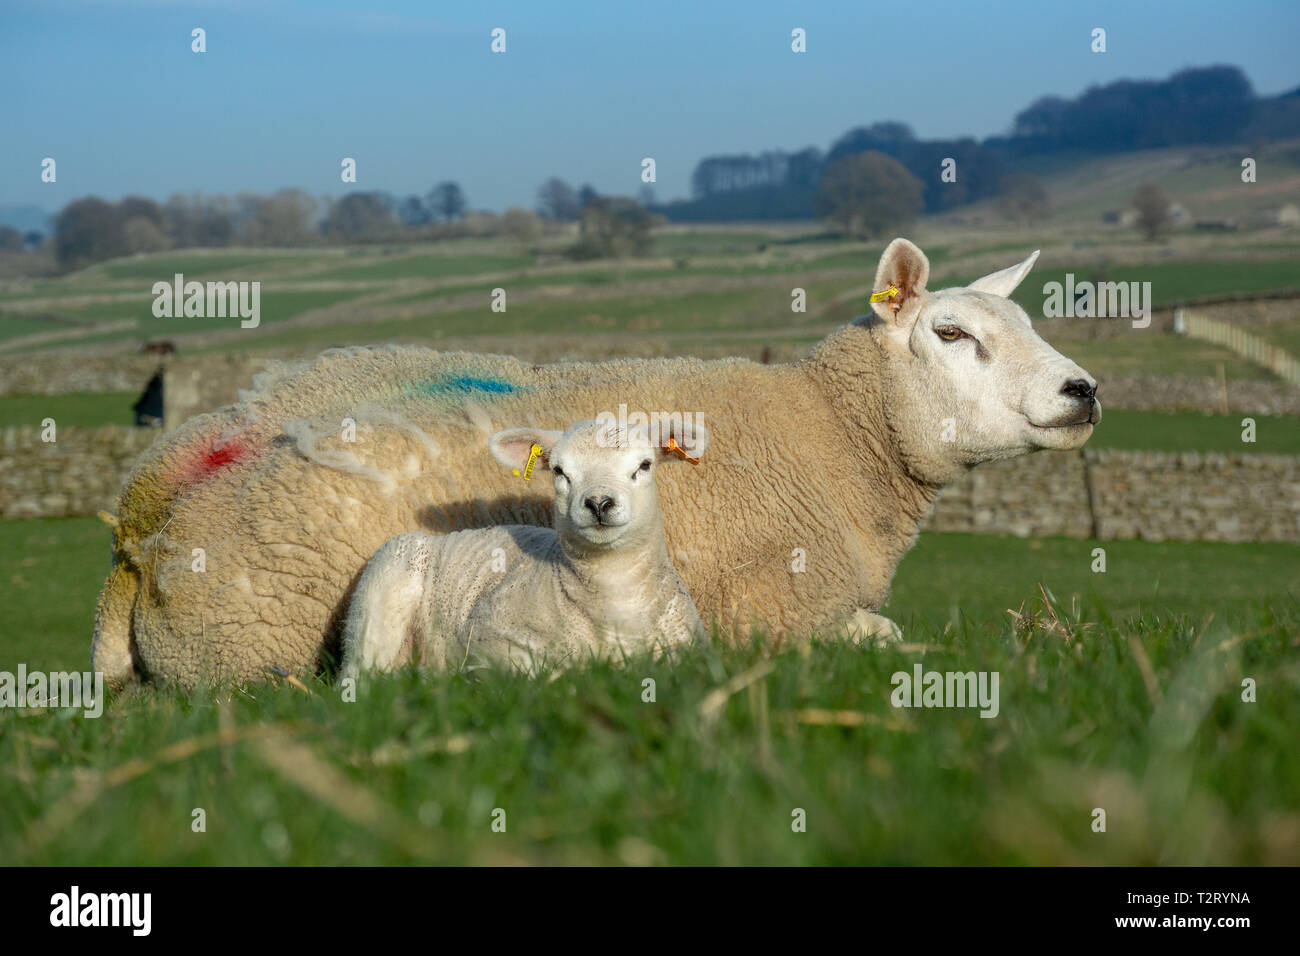 Texel pecora e agnello in pascoli, Wensleydale, North Yorkshire, Regno Unito. Foto Stock